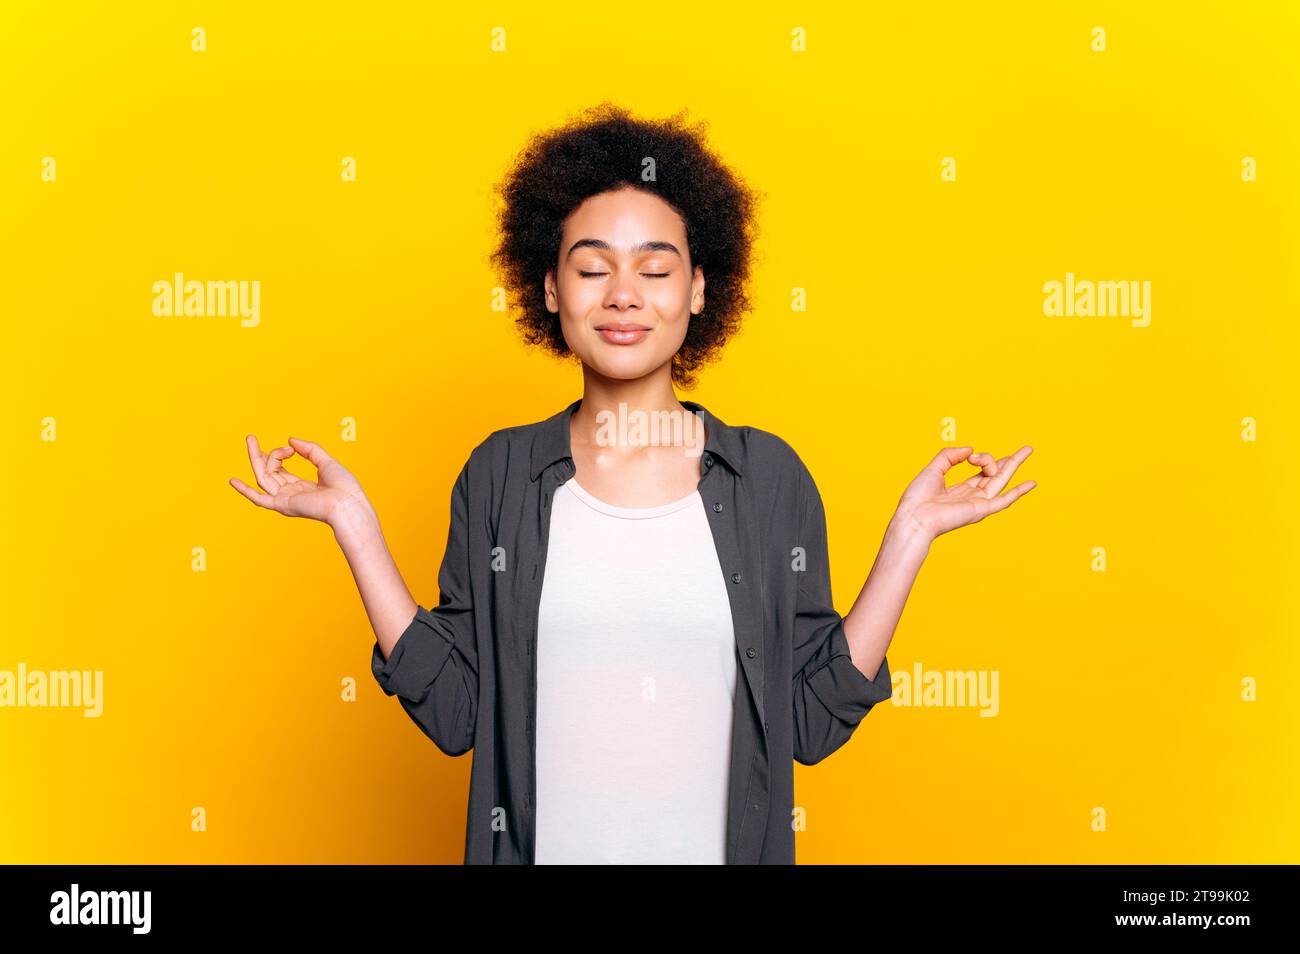 Foto einer schönen ruhigen afroamerikanischen oder brasilianischen Frau mit lockigen Haaren in einem lässigen Hemd, während sie mit geschlossenen Augen auf isoliertem gelben Hintergrund meditiert. Psychische Gesundheit, Harmonie, Entspannung Stockfoto